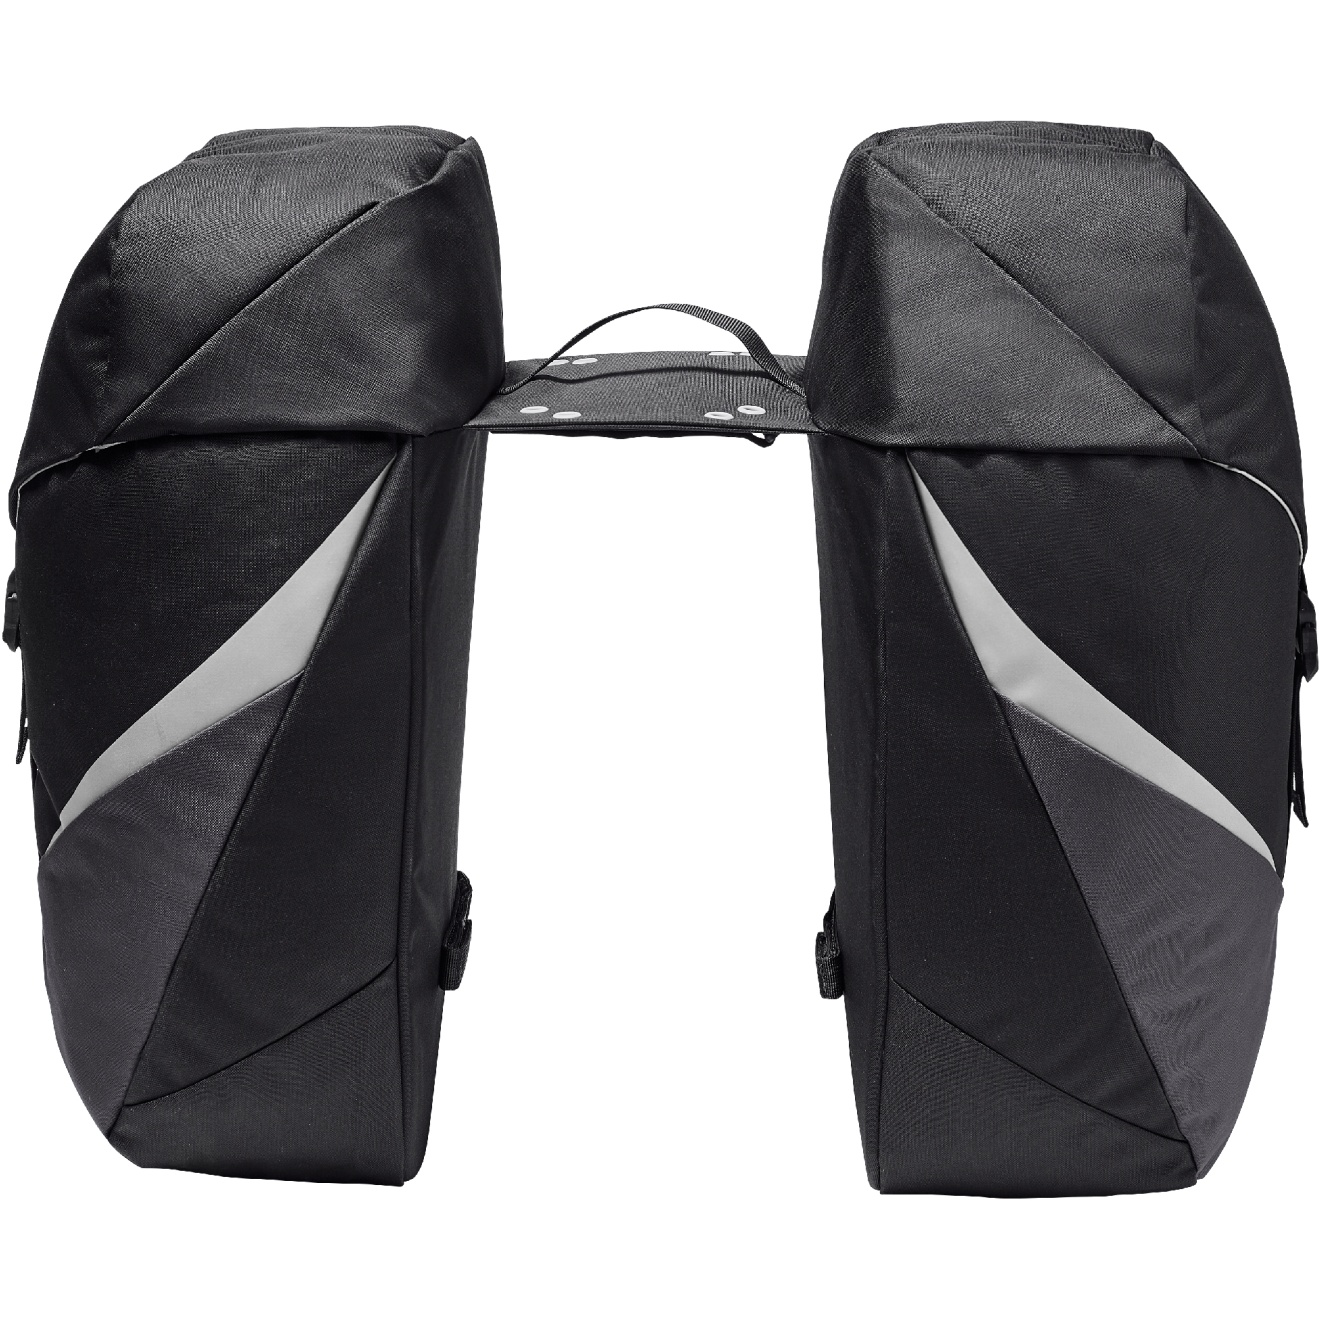 Produktbild von Vaude TwinRoadster Doppel-Hinterradtasche 2x26L - schwarz